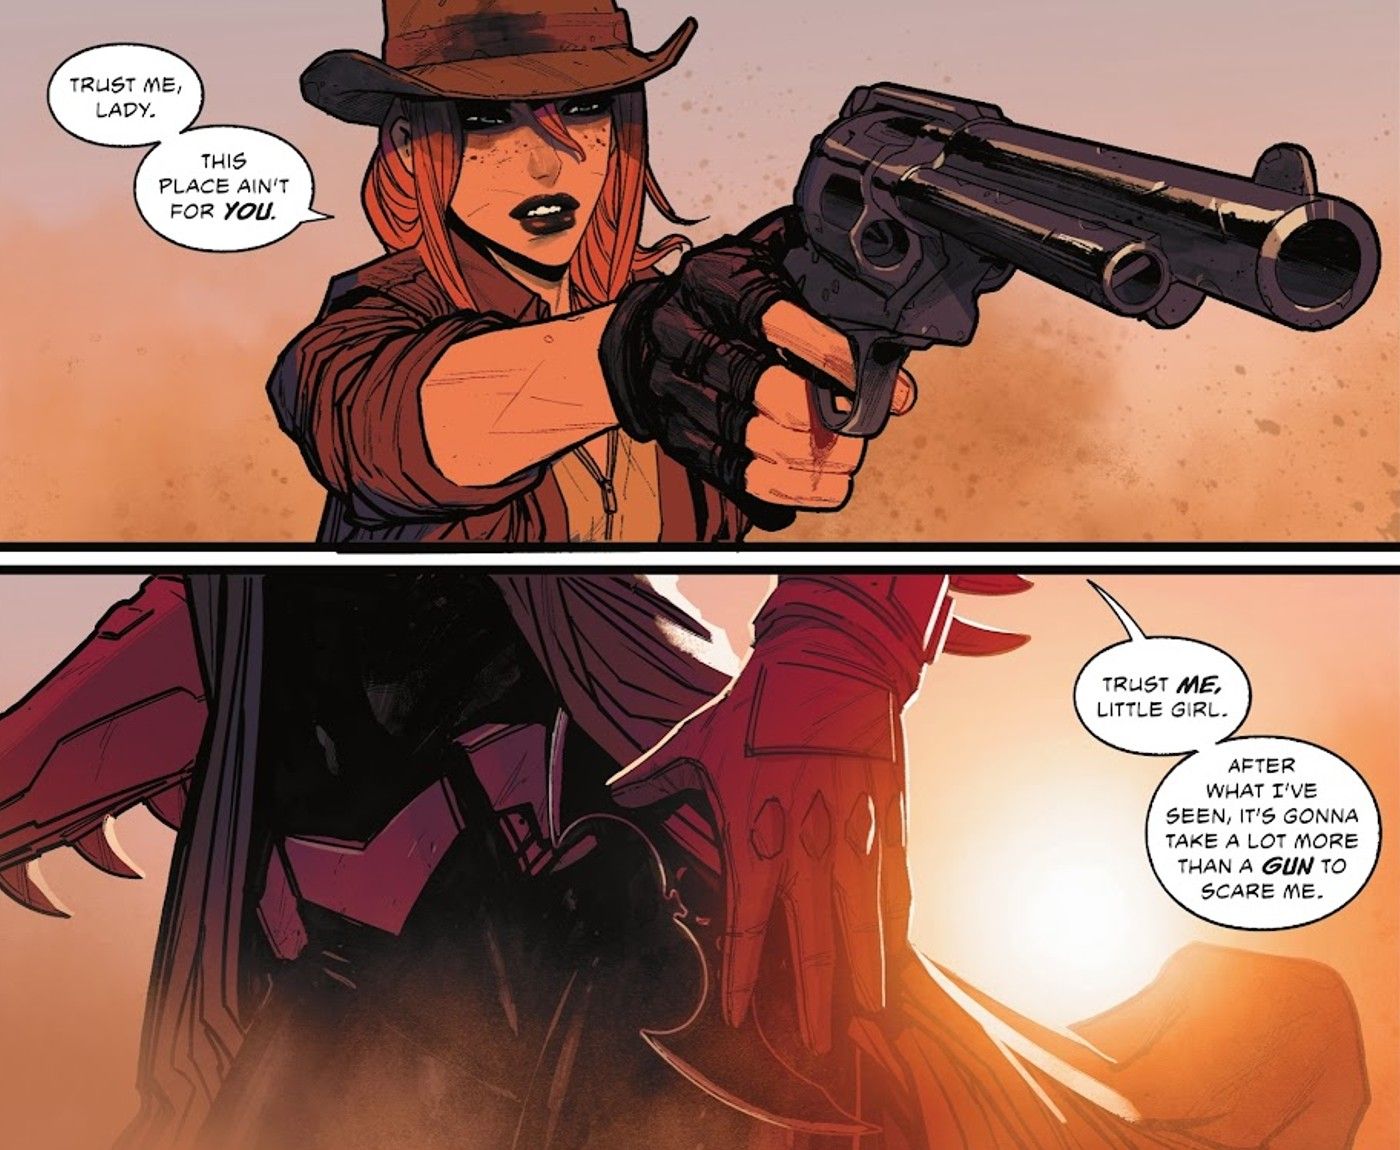 Comic book panels: Jinny Hex points a gun at Batwoman.